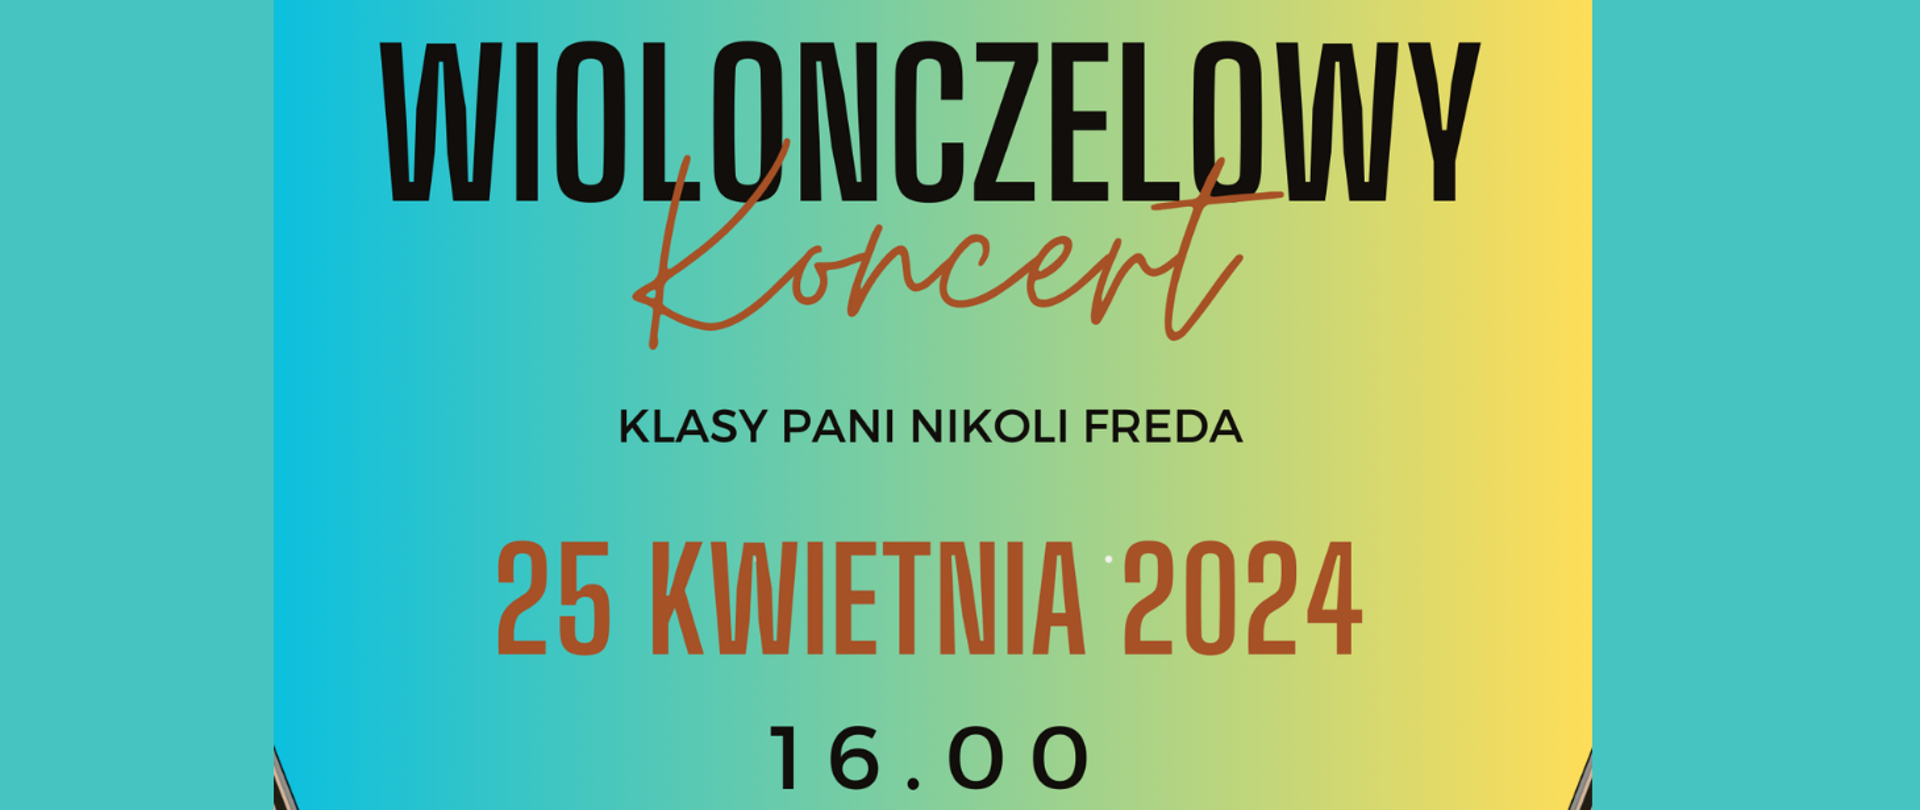 Tło gradientowe od zielonego do żółtego koloru. Treść banera: "Wiolonczelowy koncert klasy pani Nikoli Fredy". 25 kwietnia 2024 16.00.